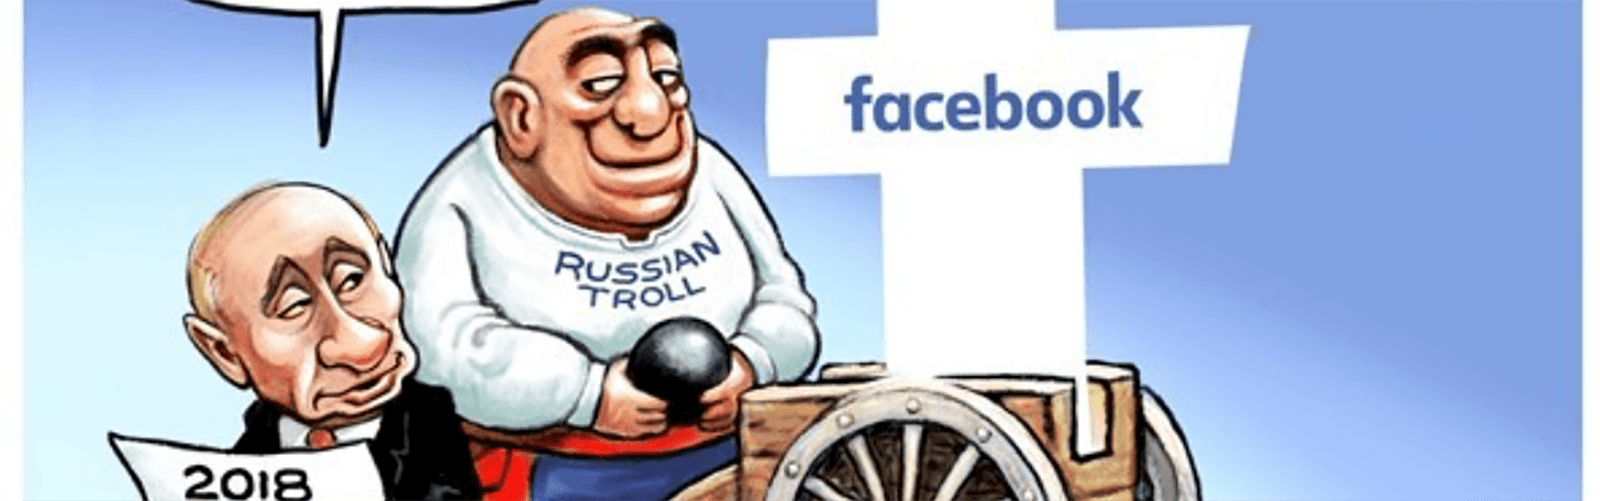 political cartoon facebook election Russia